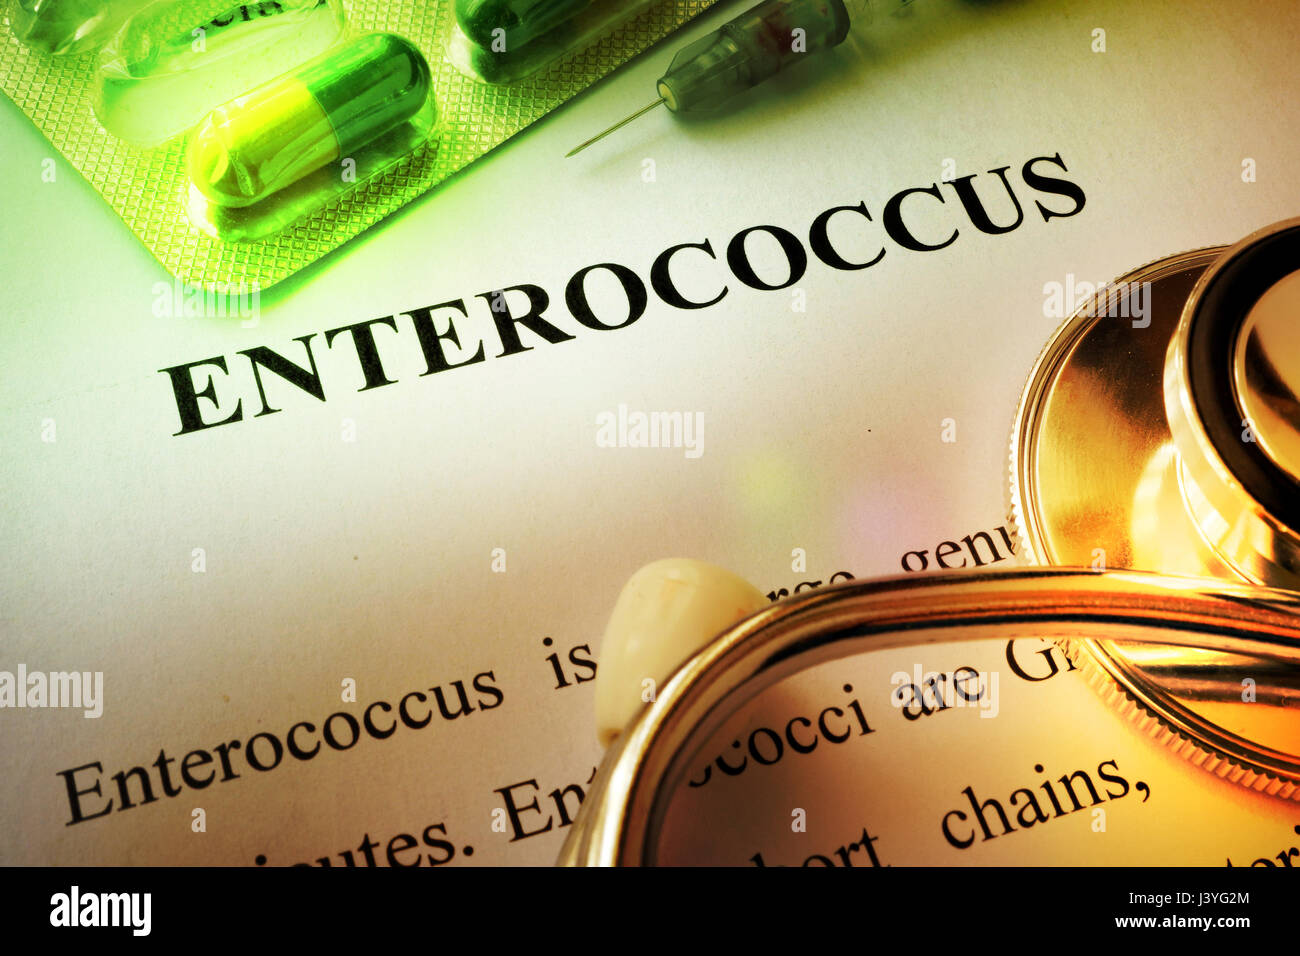 La page de titre du livre avec l'infection Enterococcus. Banque D'Images